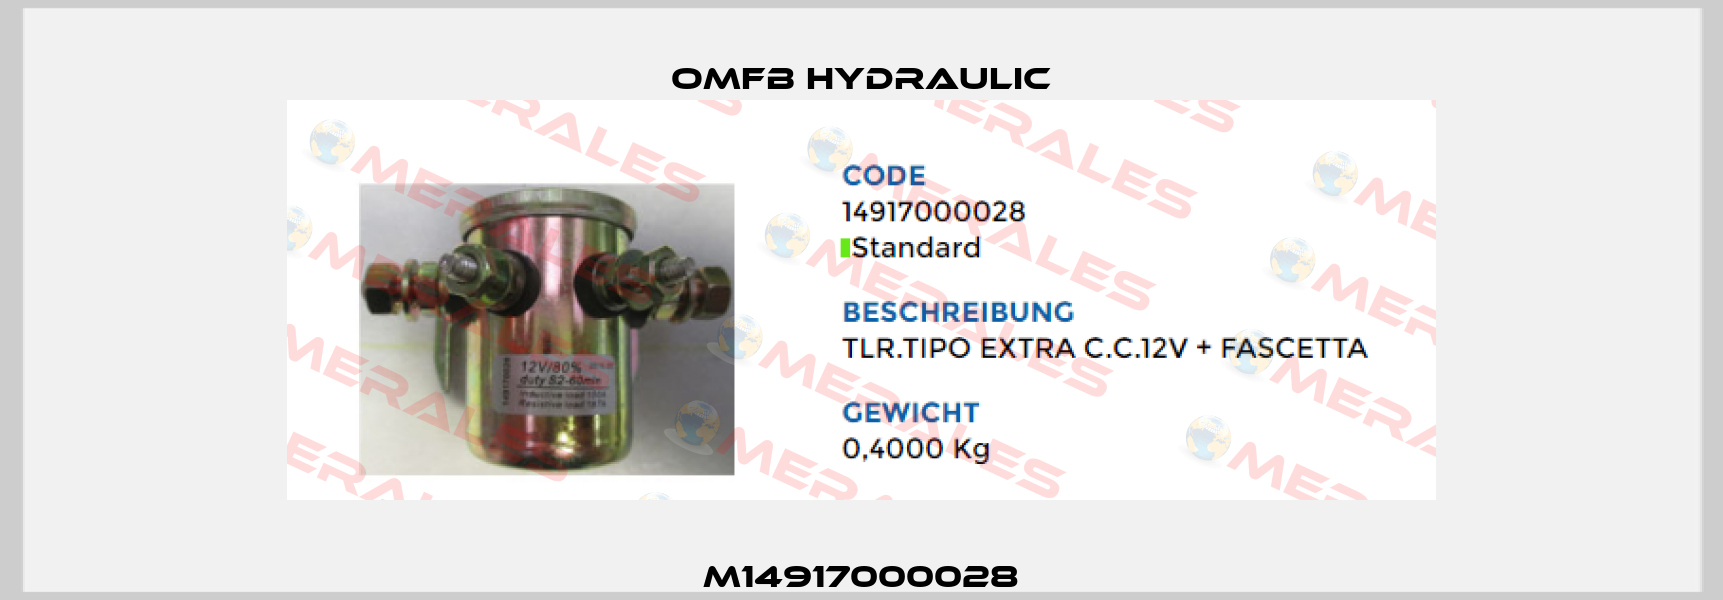 M14917000028 OMFB Hydraulic